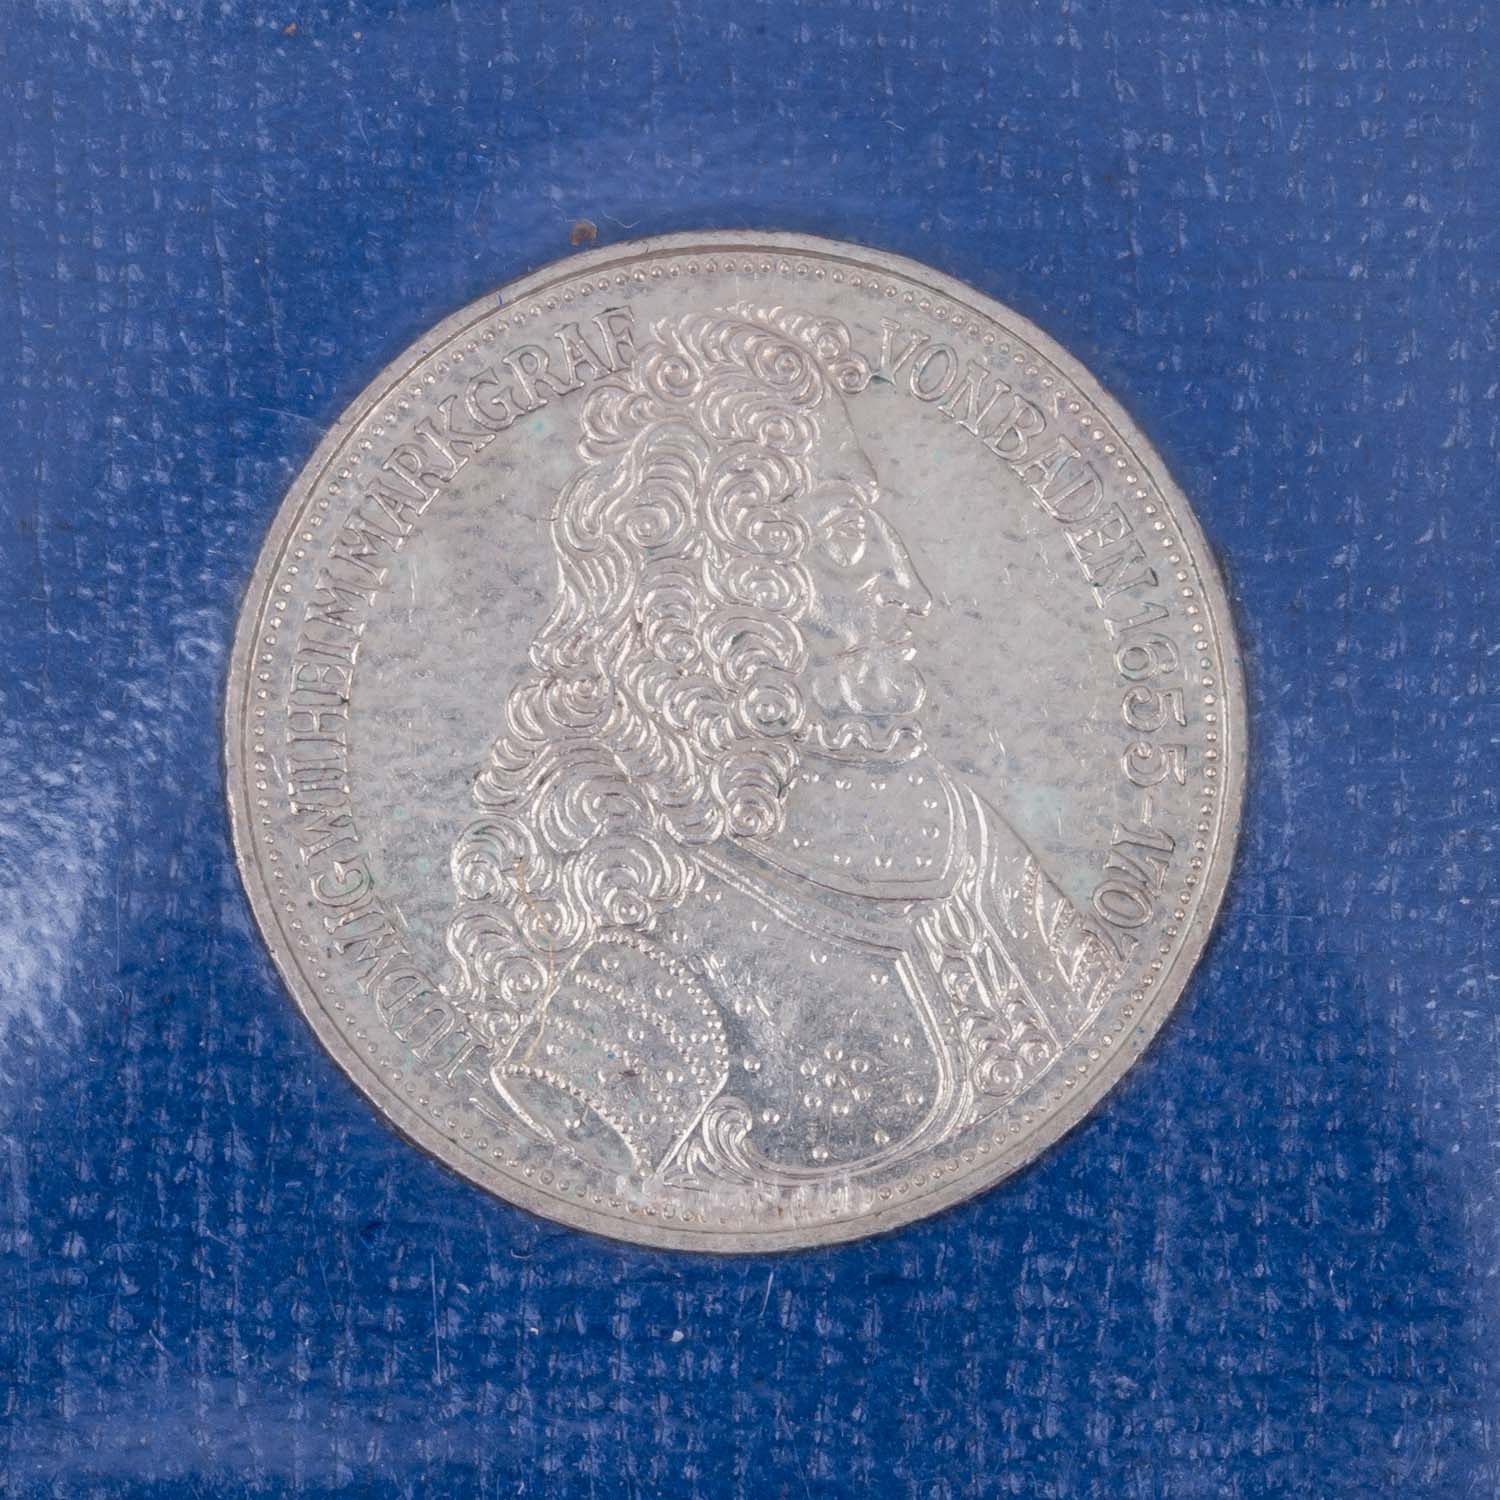 BRD - 7 x aus den Top 5, 5 DM Münzen, - Image 4 of 5